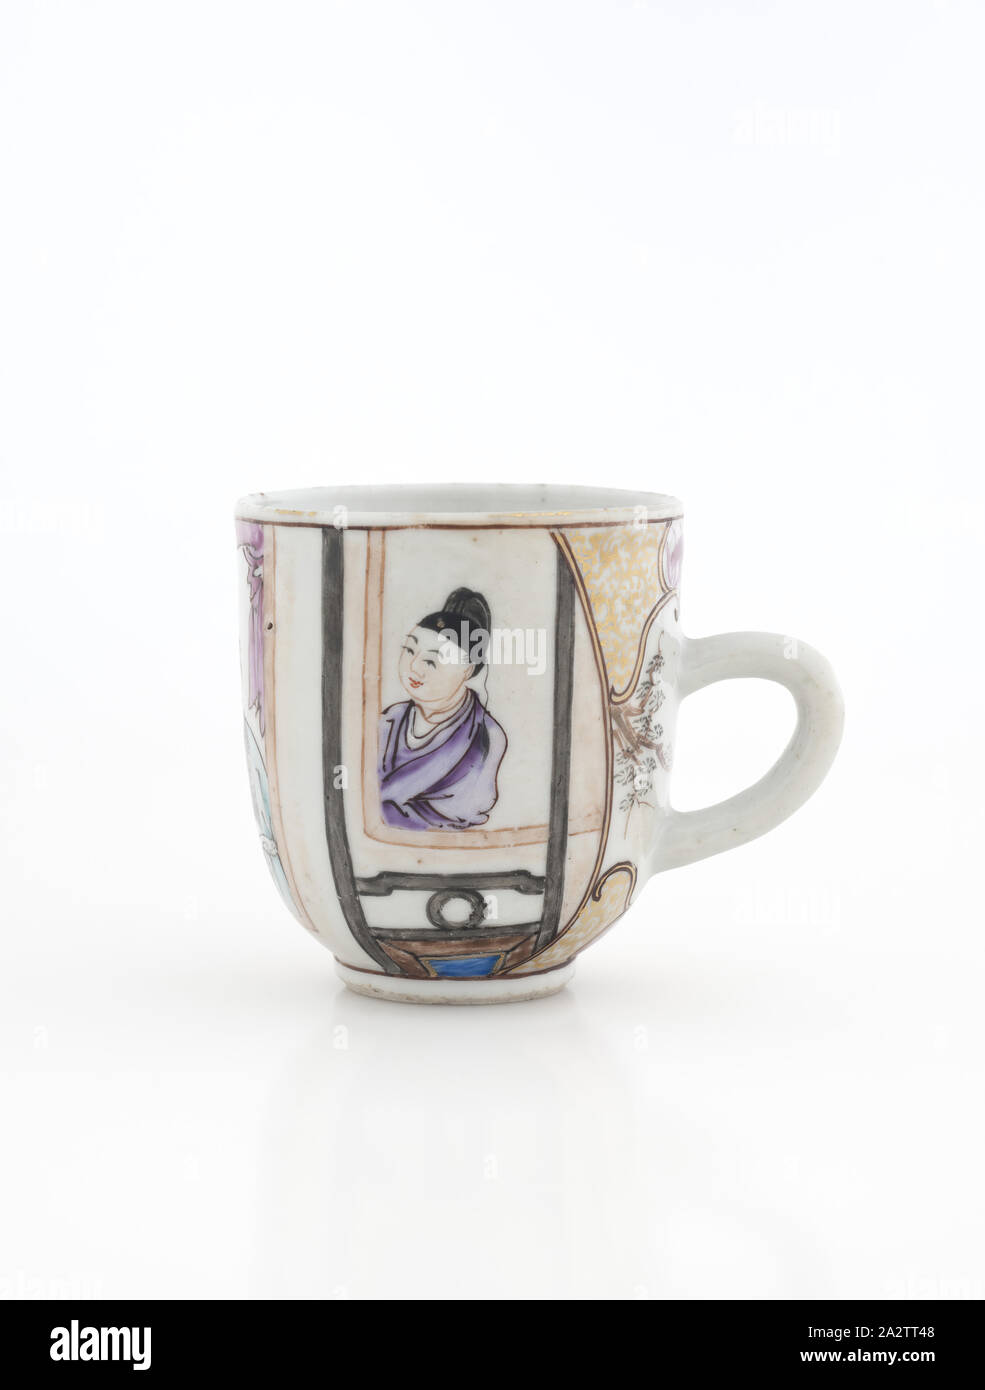 Tazza da tè con maniglia, XVIII secolo, smalto su porcellana, 2-9/16 x 2-3/8 (diam.)., Arte Asiatica Foto Stock